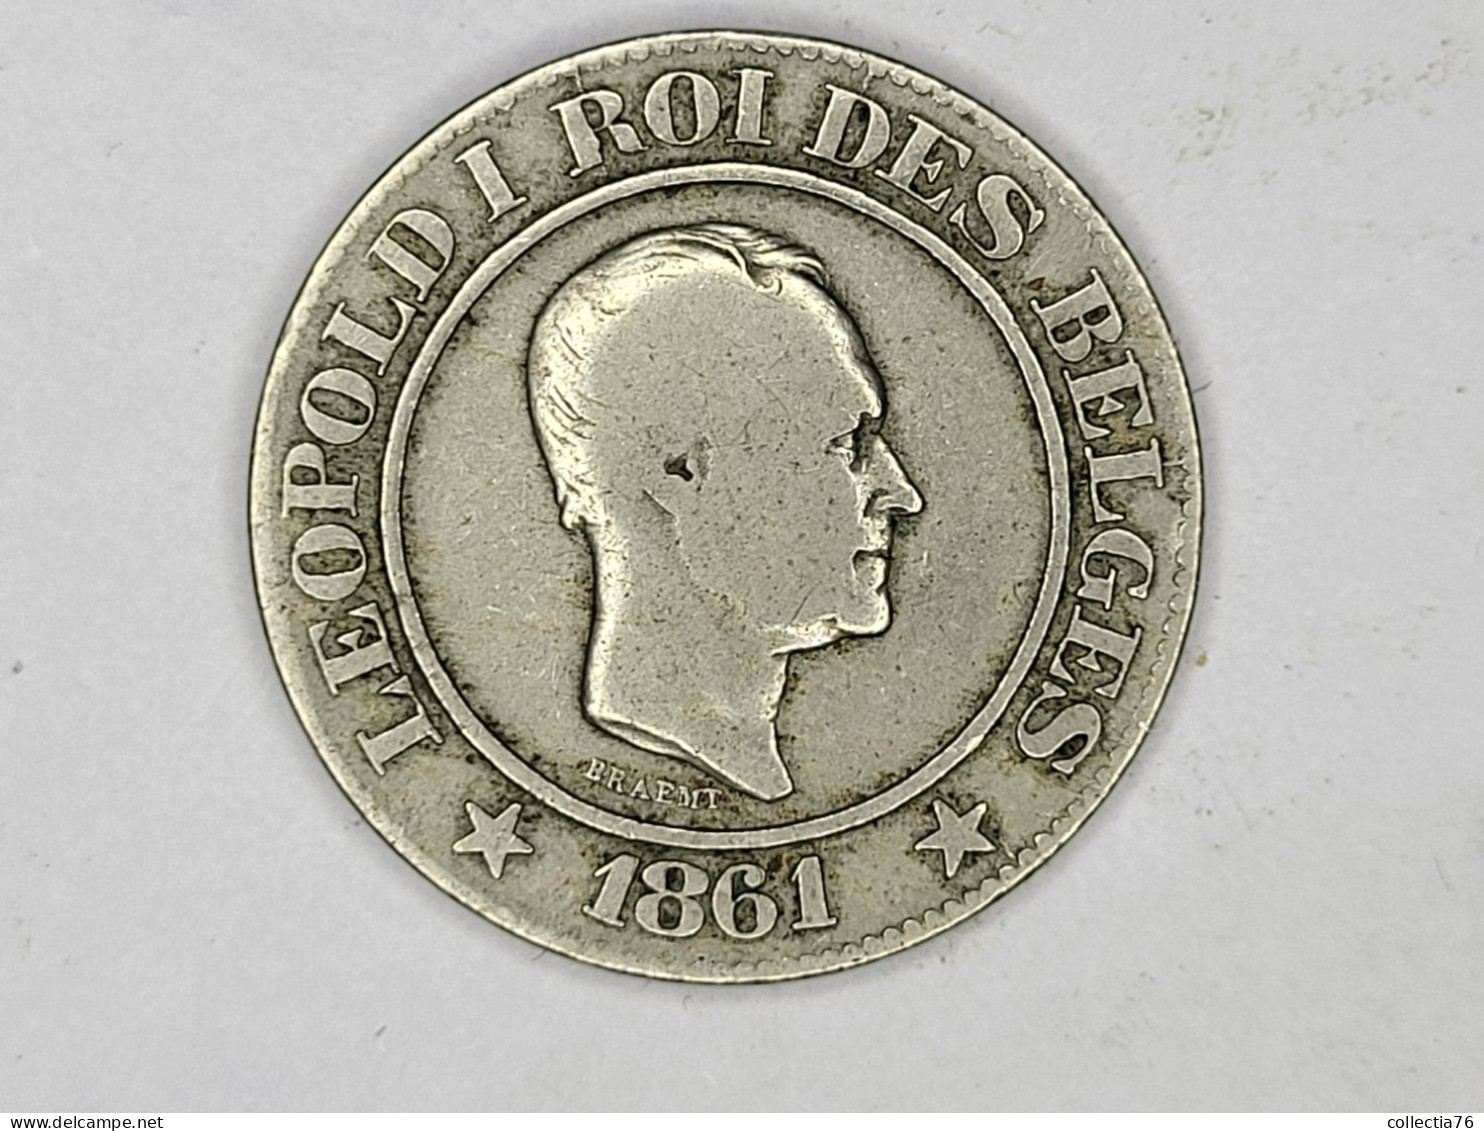 MONNAIE COIN BELGIQUE BELGIE 20 CENTIMES LEOPOLD I 1861 LEGENDE FRANCAISE - 20 Cents